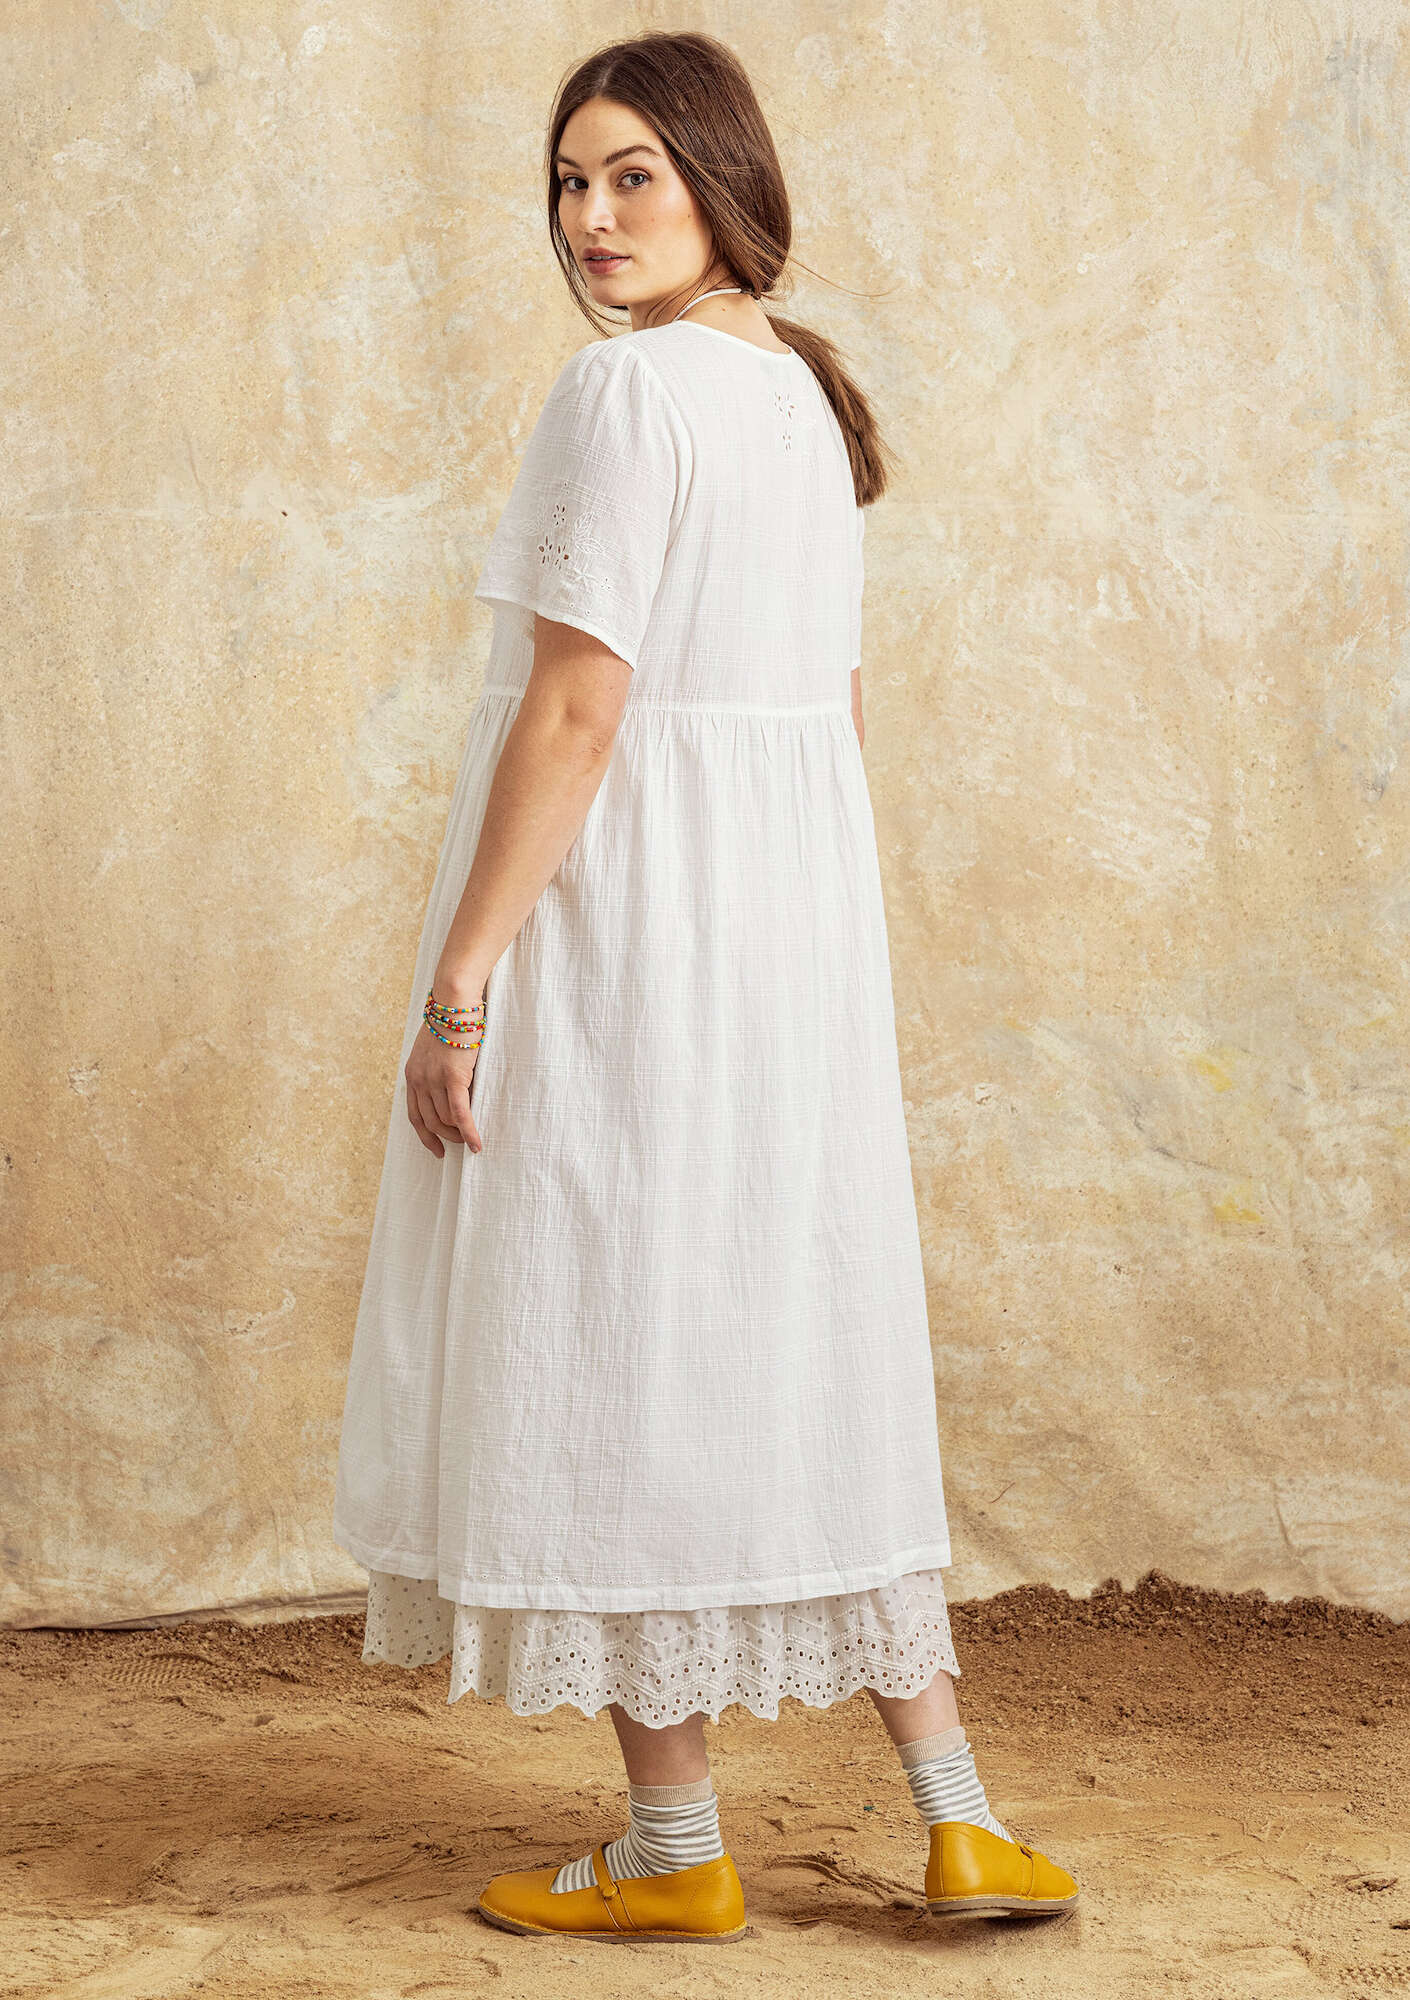 Vevd kjole «Tania» i økologisk bomull halvbleket